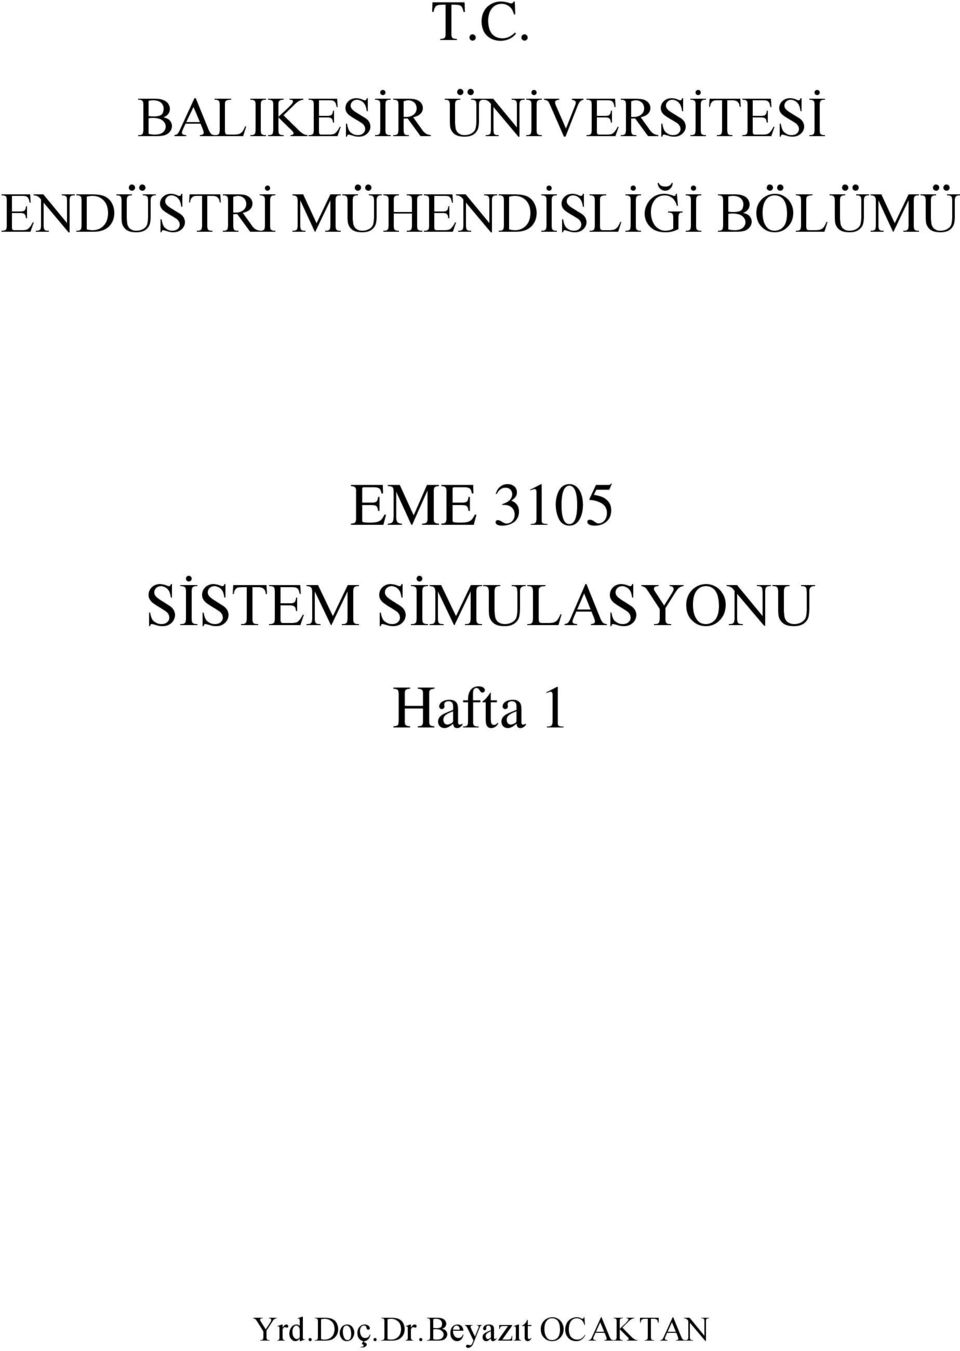 EME 3105 SİSTEM SİMULASYONU